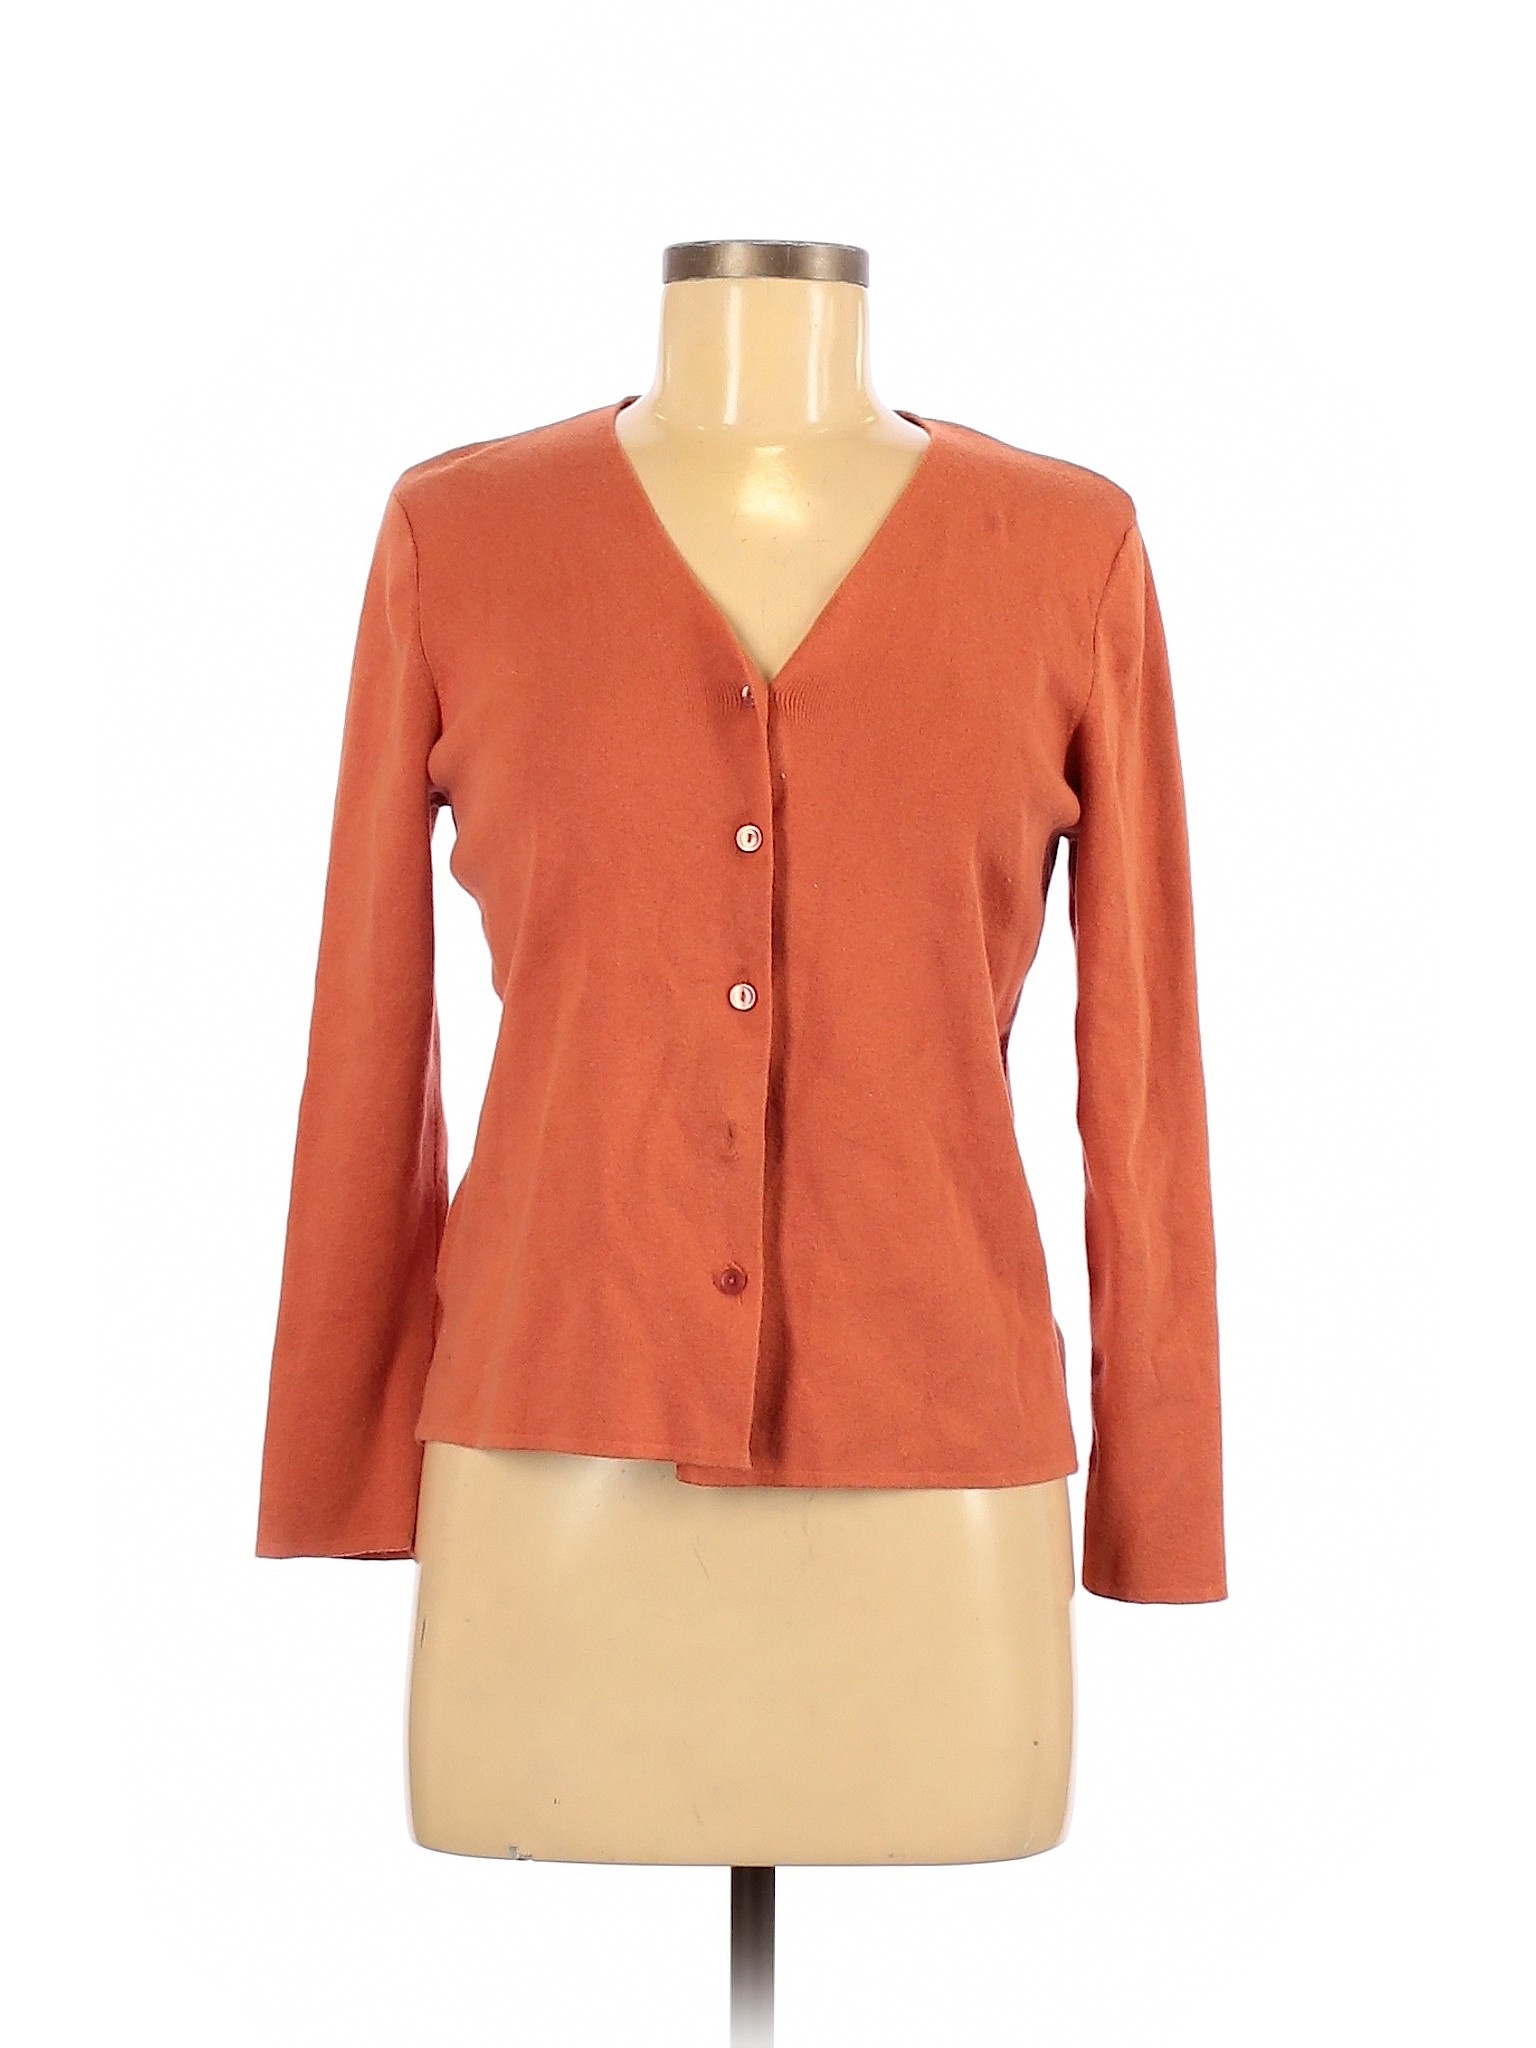 Designers Originals Women Orange Cardigan M Petites | eBay